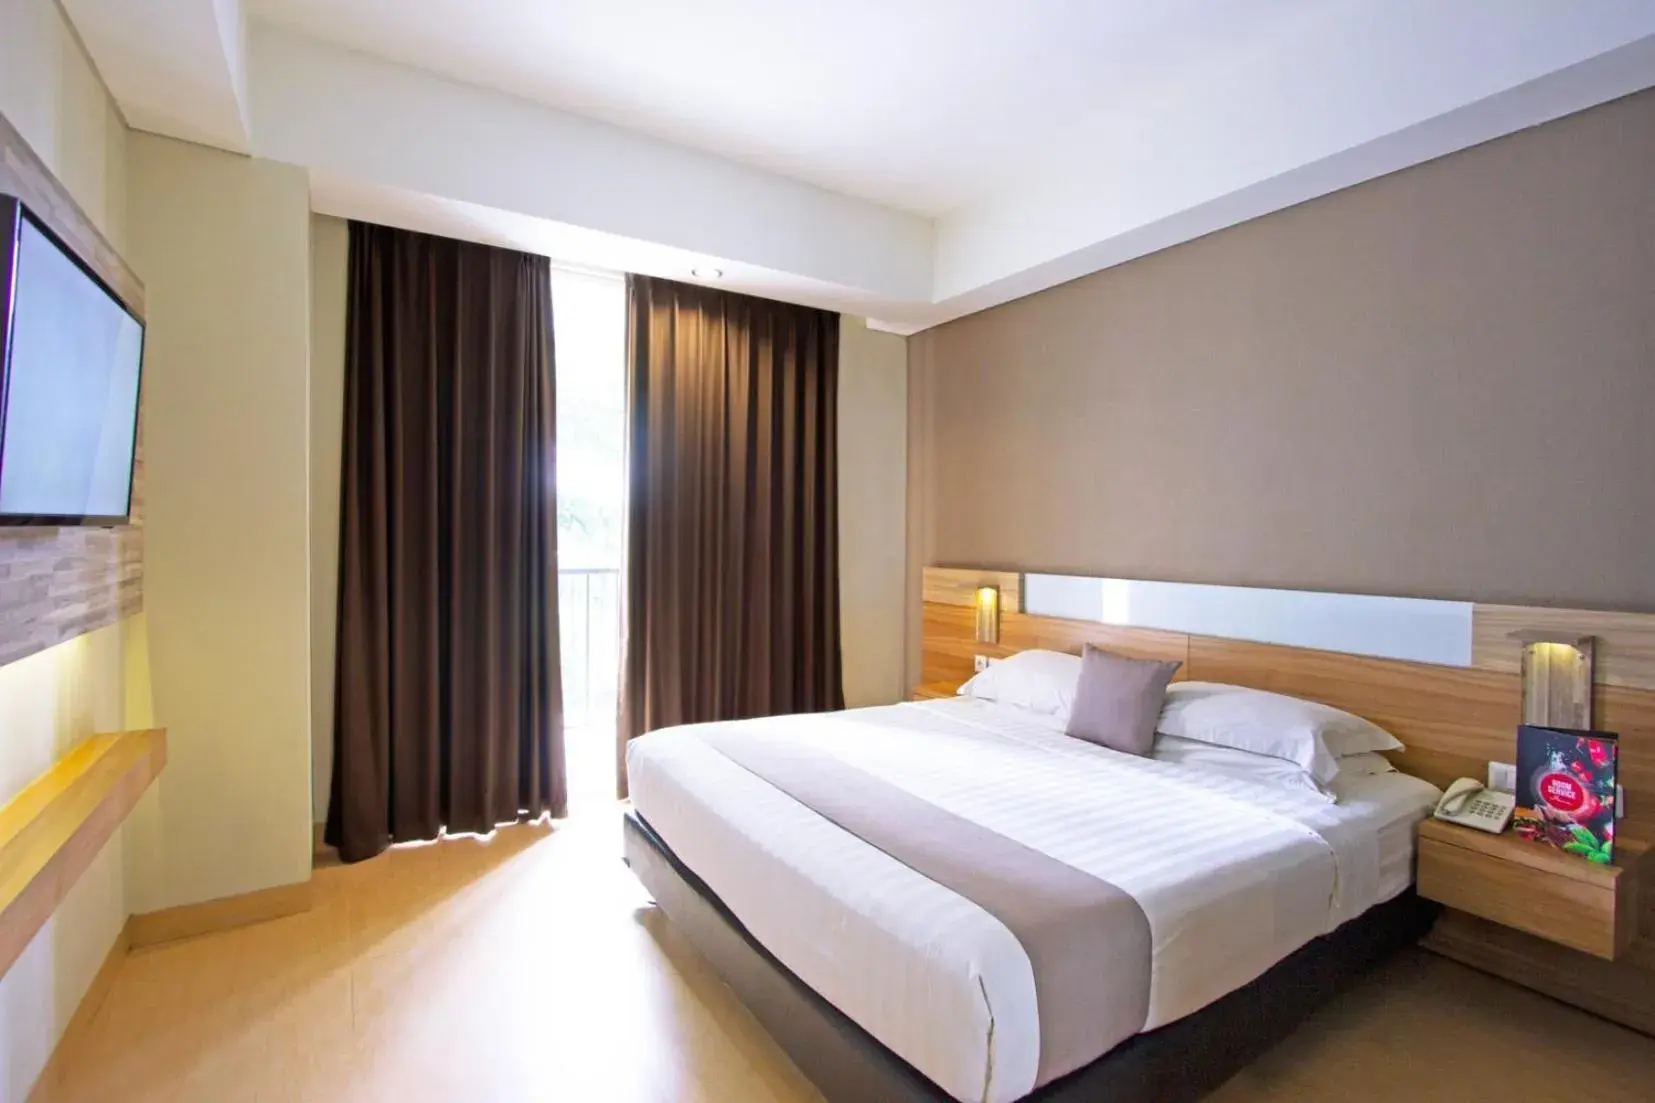 Bed in Hotel Dafam Fortuna Seturan